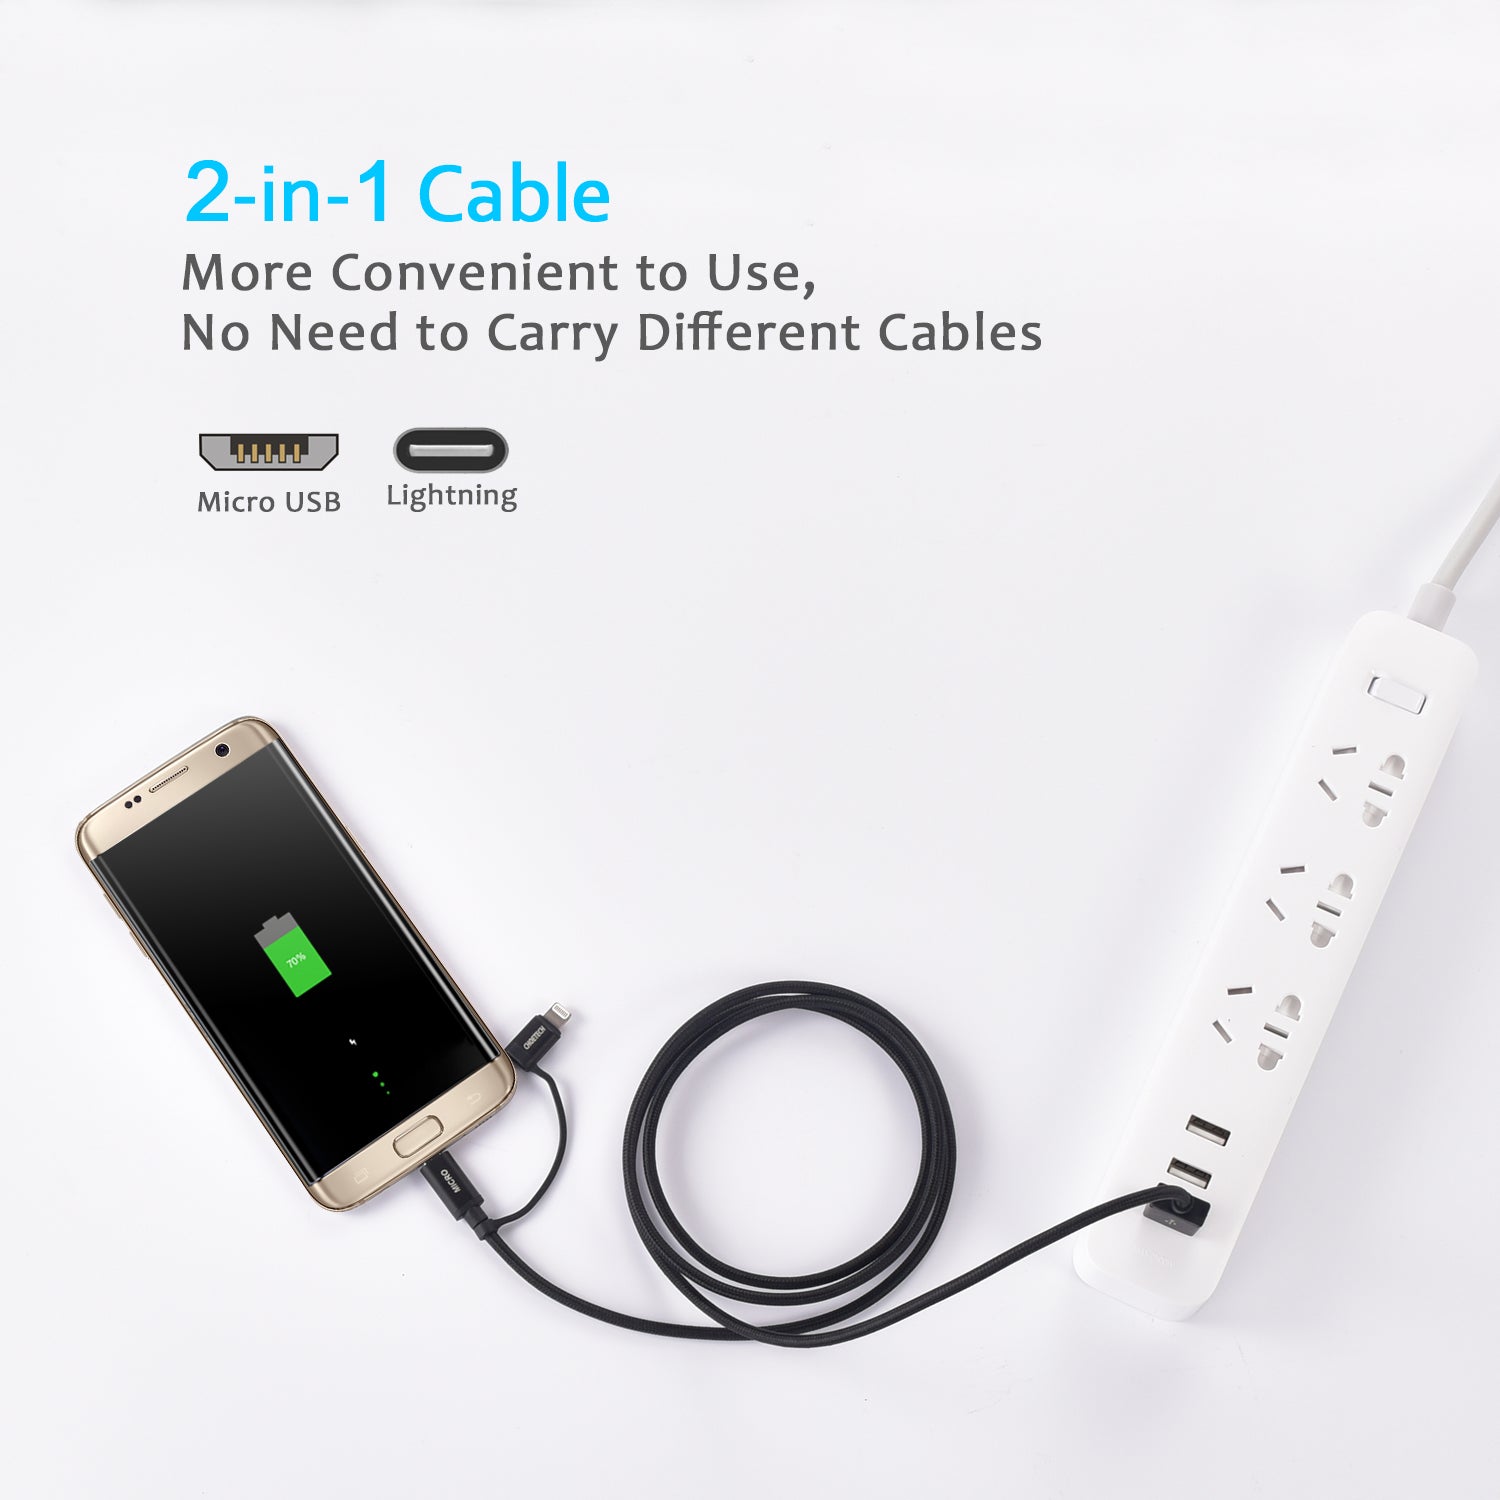 IP0028 [Certificado Apple MFi] CHOETECH 2 en 1 Cable Lightning y Micro USB (1,2 m/4 pies), cable trenzado de nailon para carga y sincronización para iPhone 7/7 Plus/6s/6s Plus/6/6 Plus, iPad, iPod, Galaxy borde S7 y más